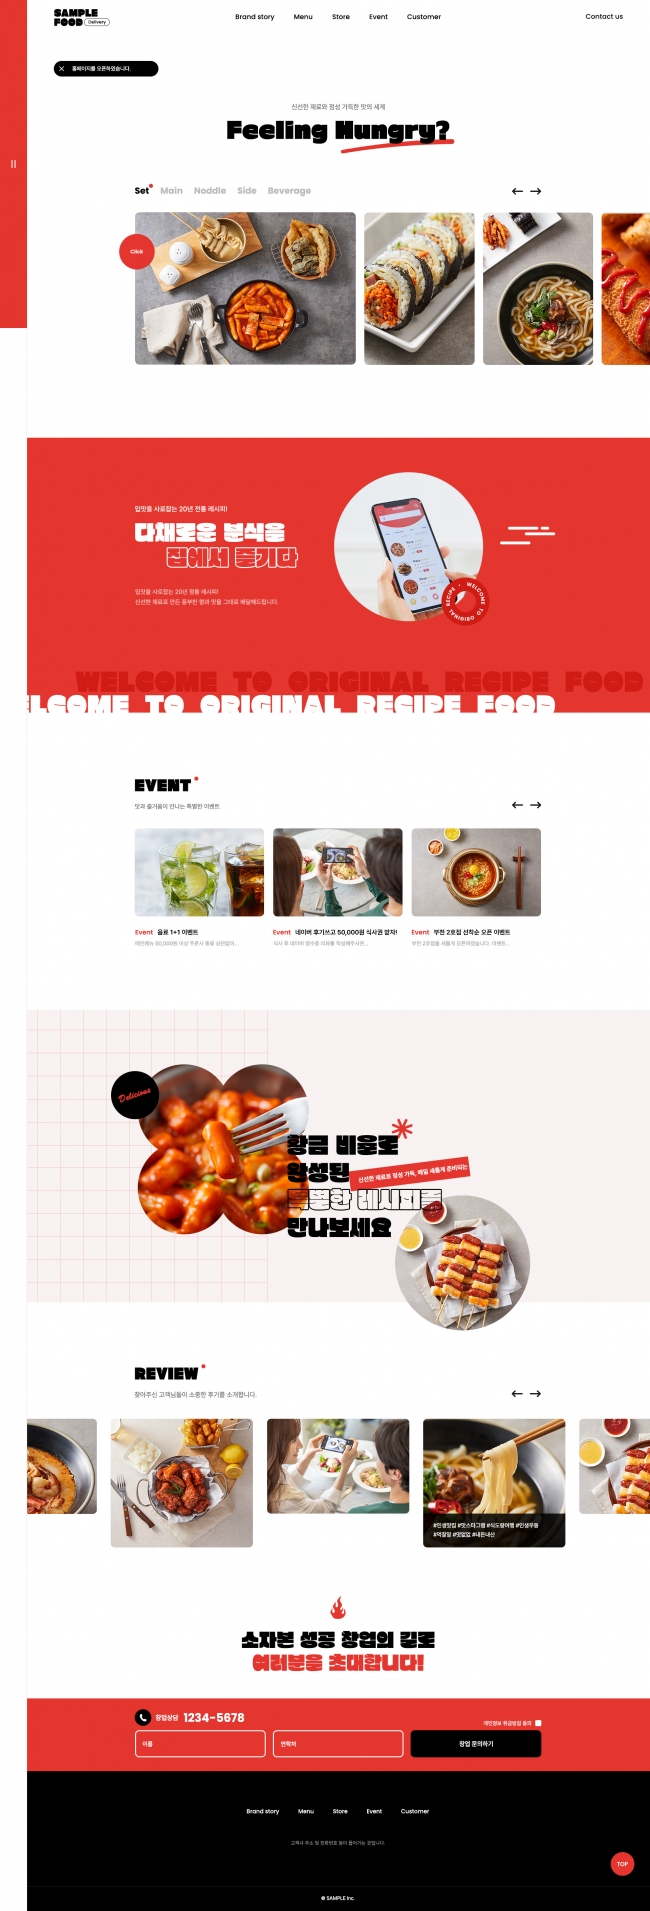 요식업 웹사이트 템플릿 food1030 이미지,  요식업 홈페이지 디자인